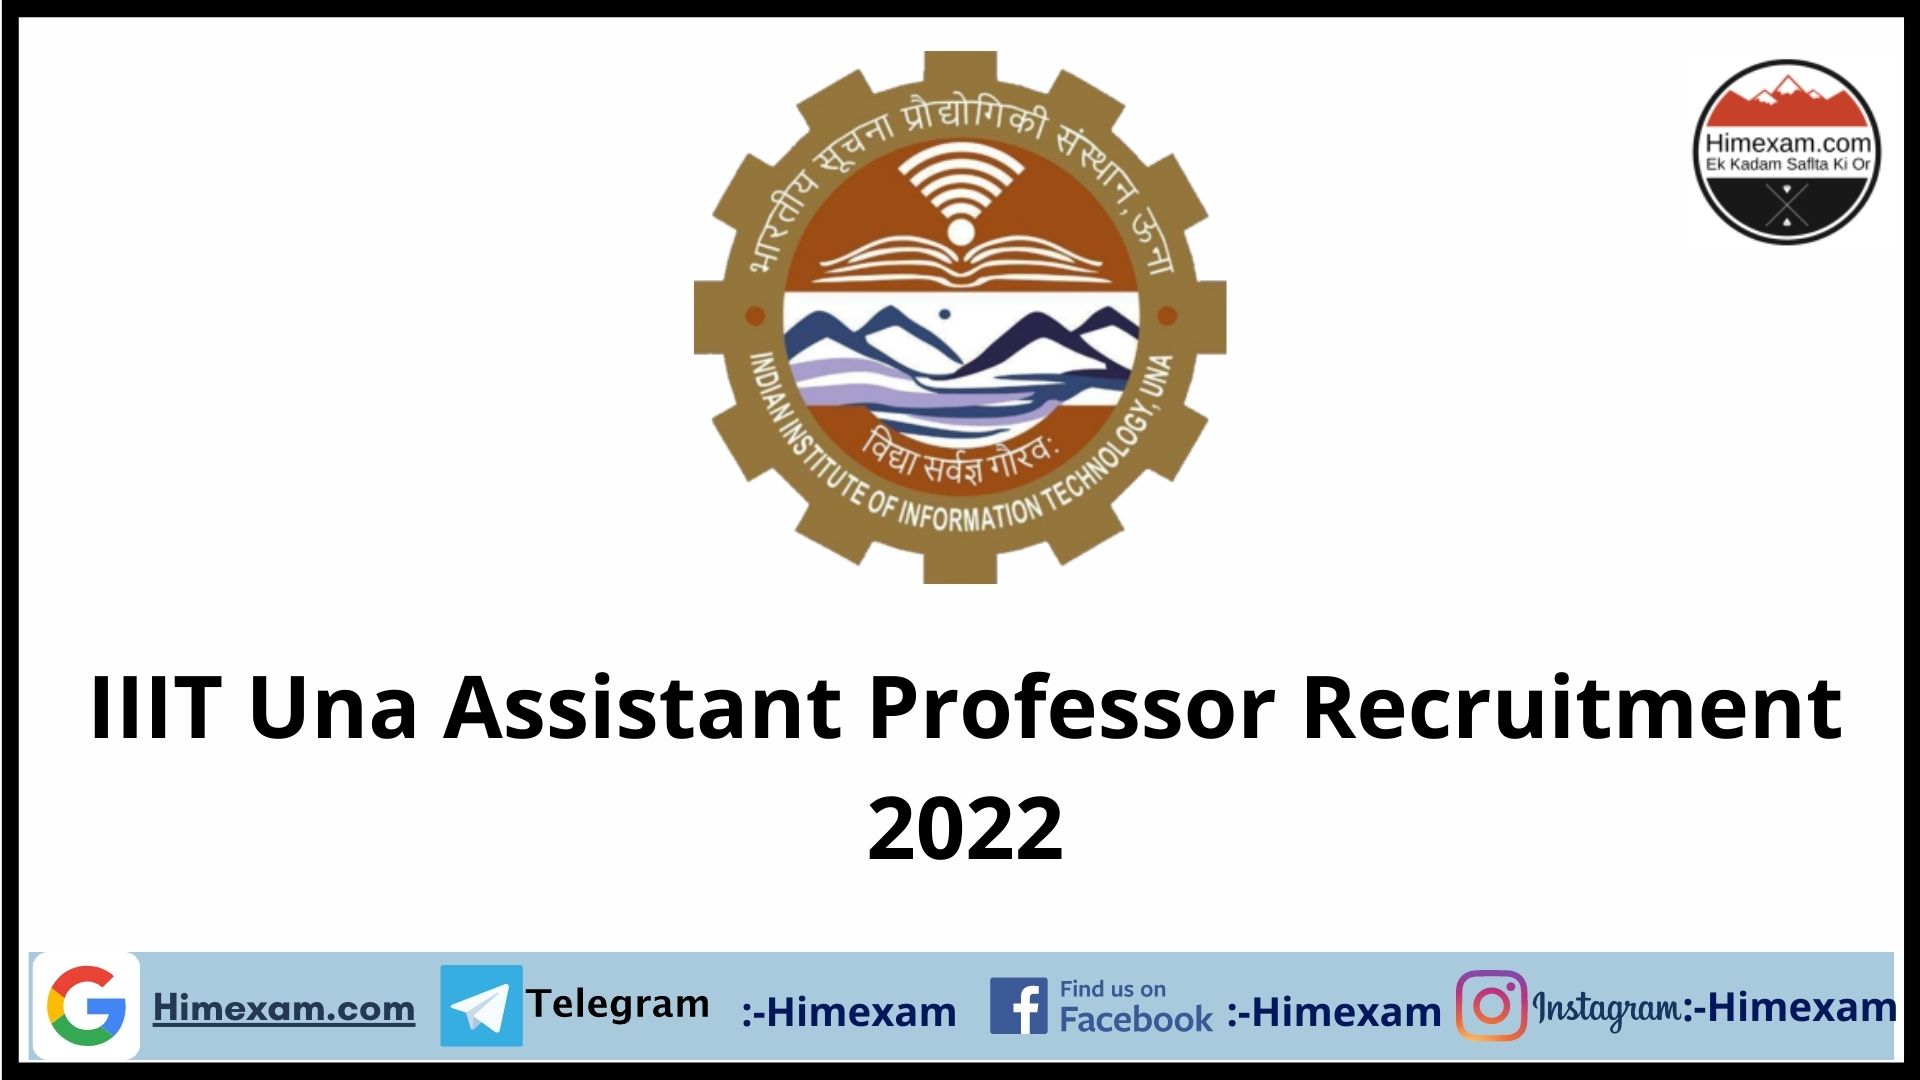 IIIT Una Assistant Professor Recruitment 2022